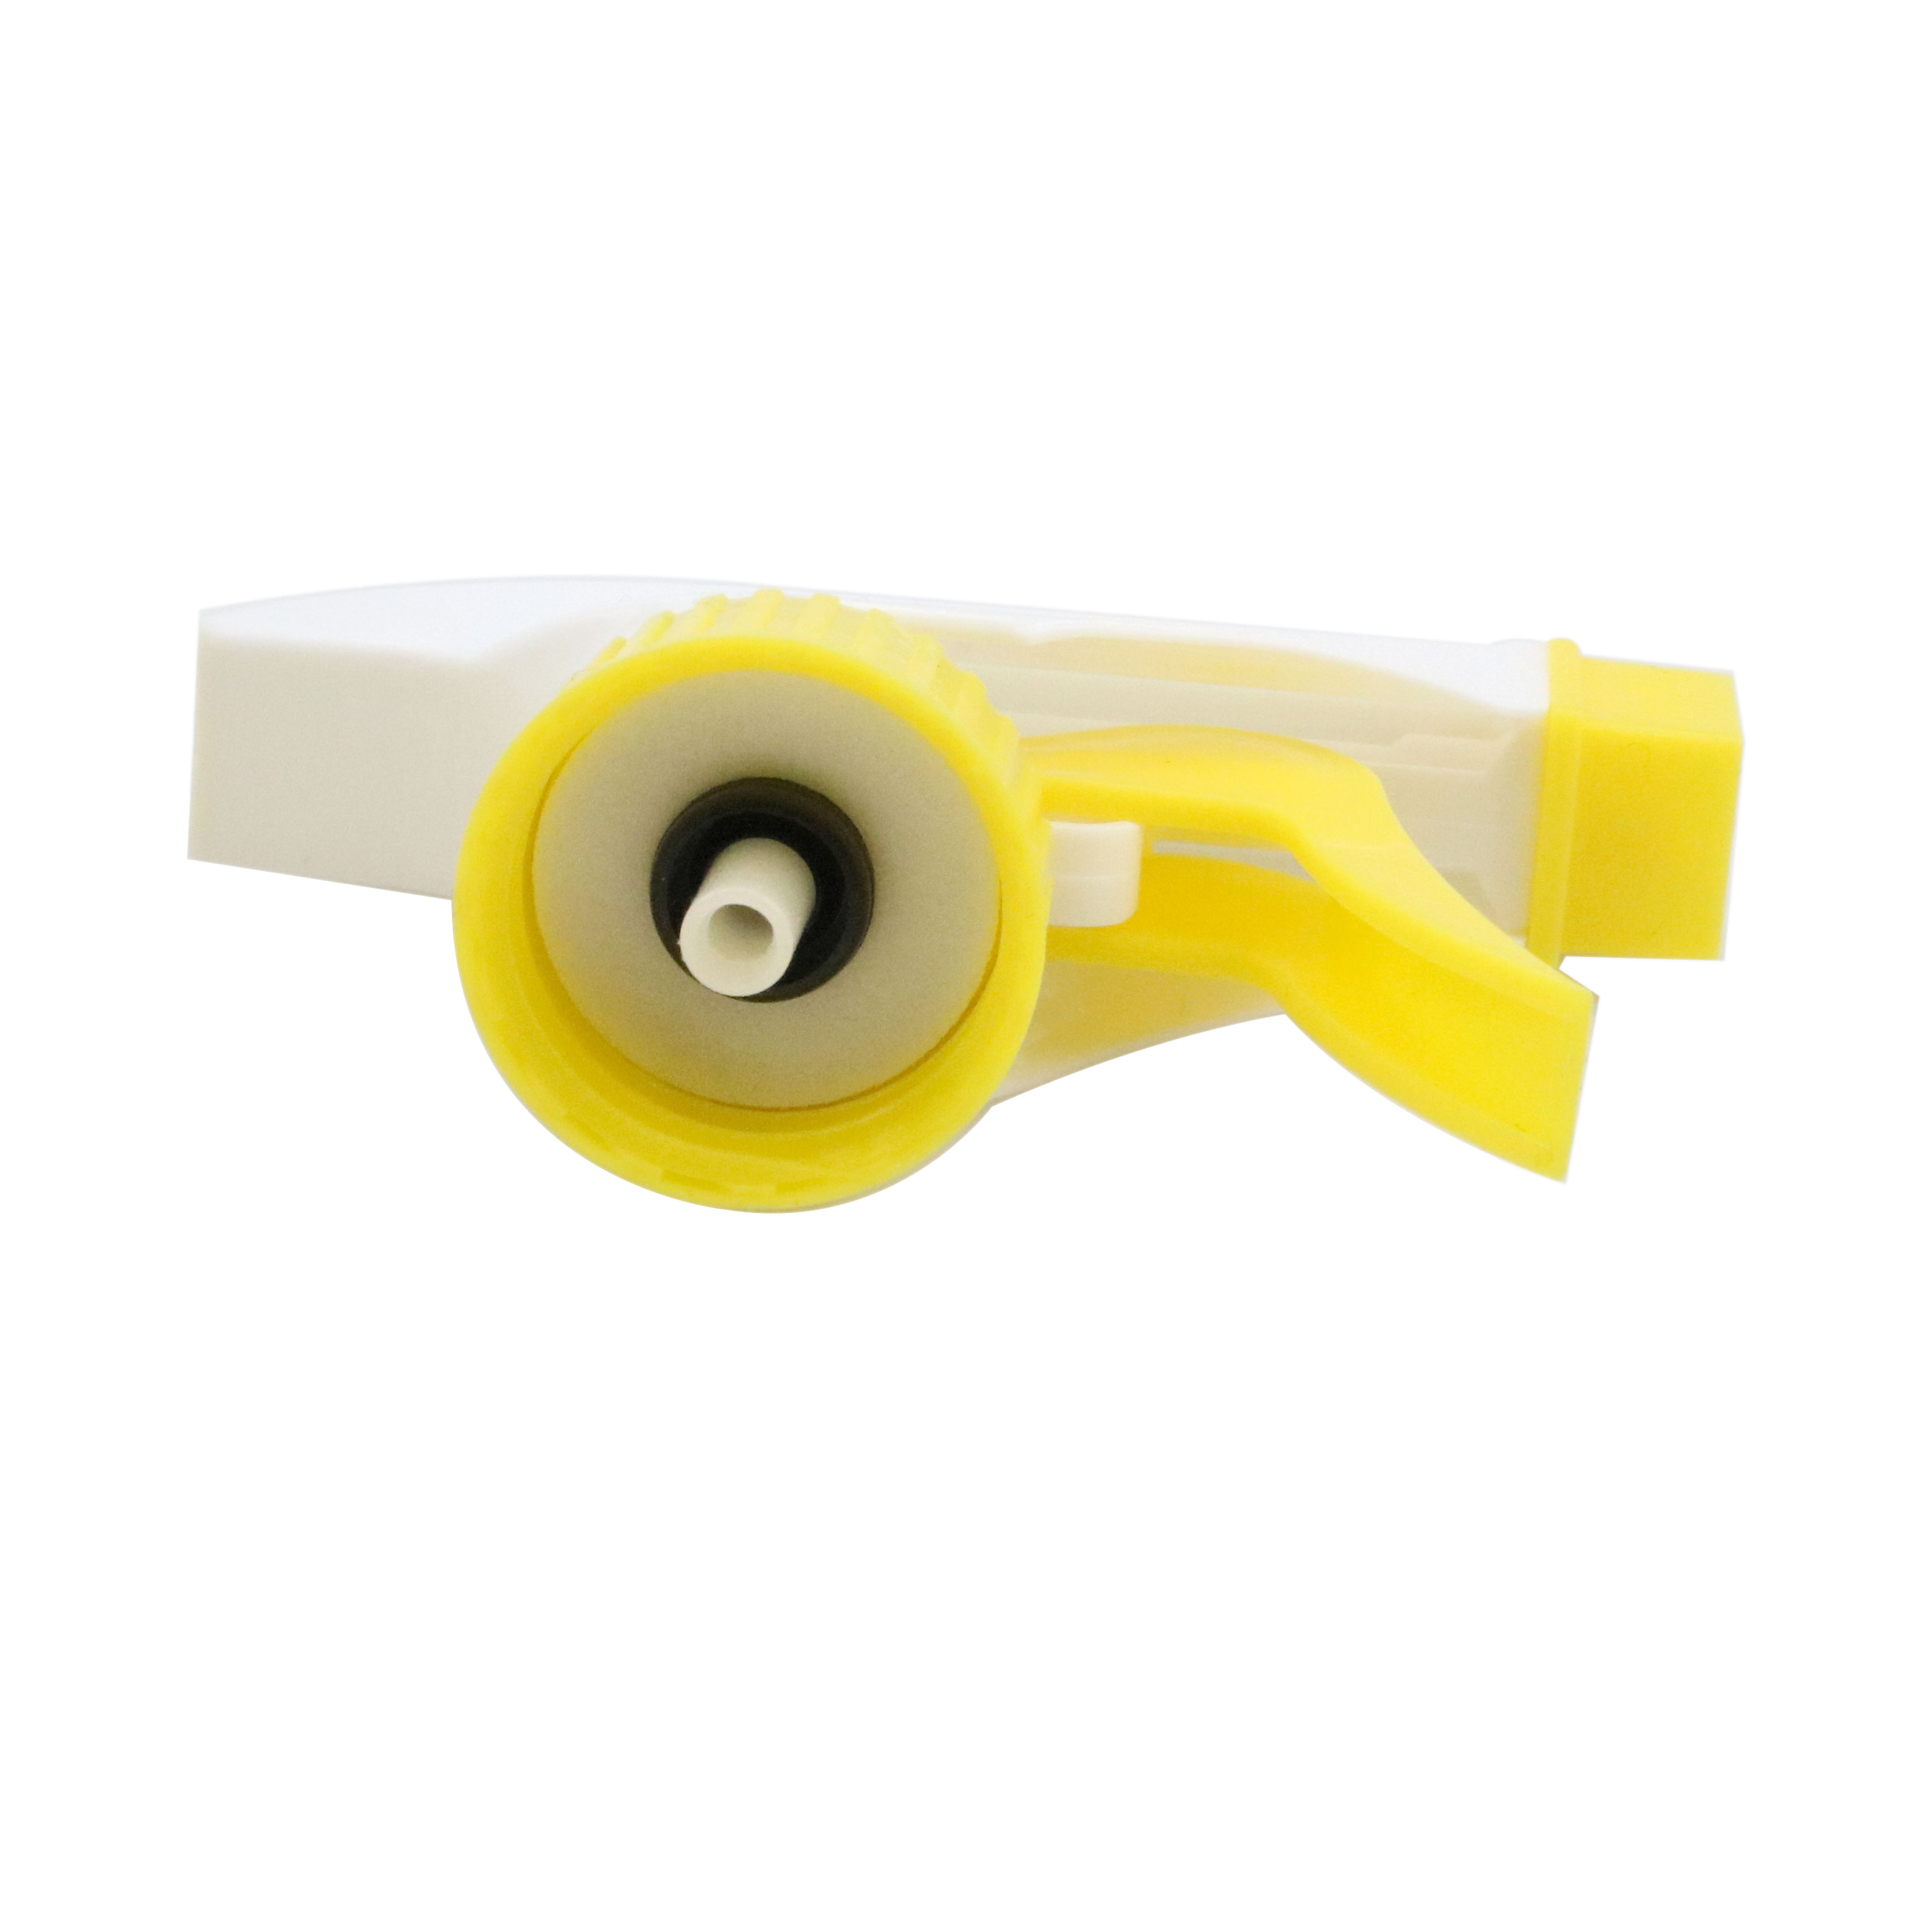 Omenala 28/400 28/410 28/415 Plastic PP Material Head Trigger Triger Sprayer For Bottle